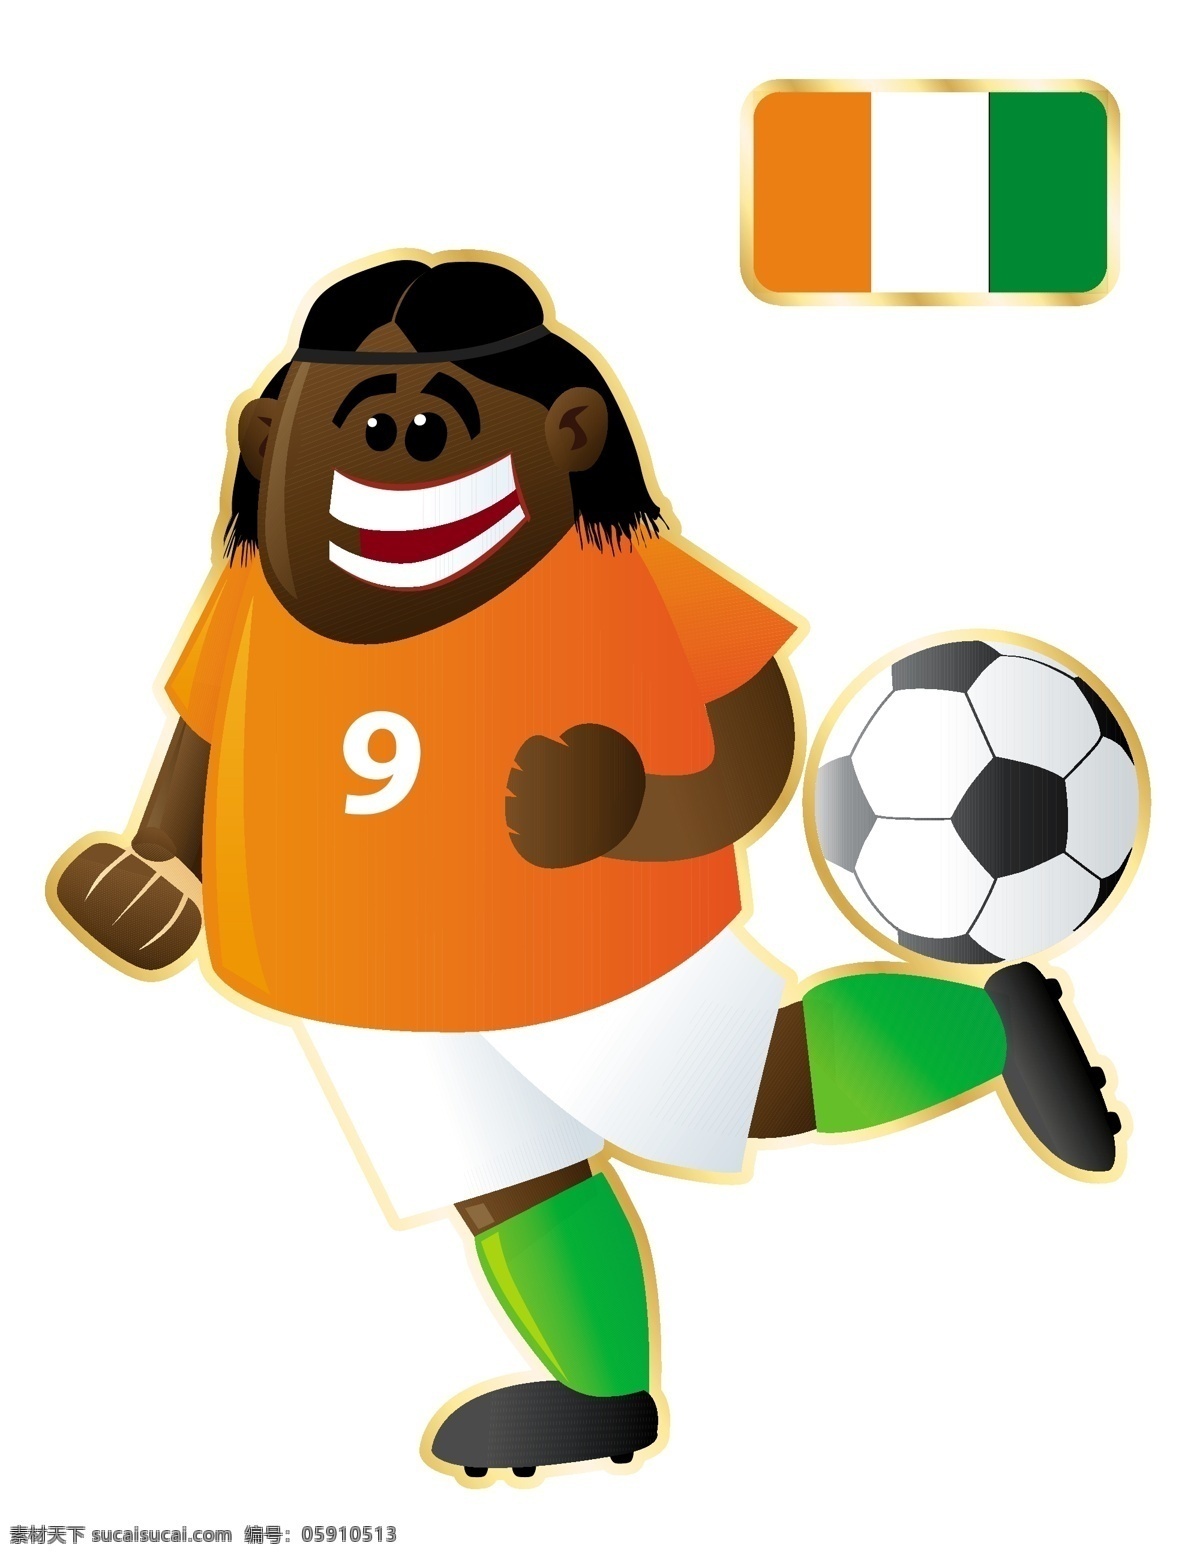 踢球 足球 卡通 人物 形象 矢量图 黄色 衣服 运动员 大胖子 运动 外国 矢量 扁平化 平面